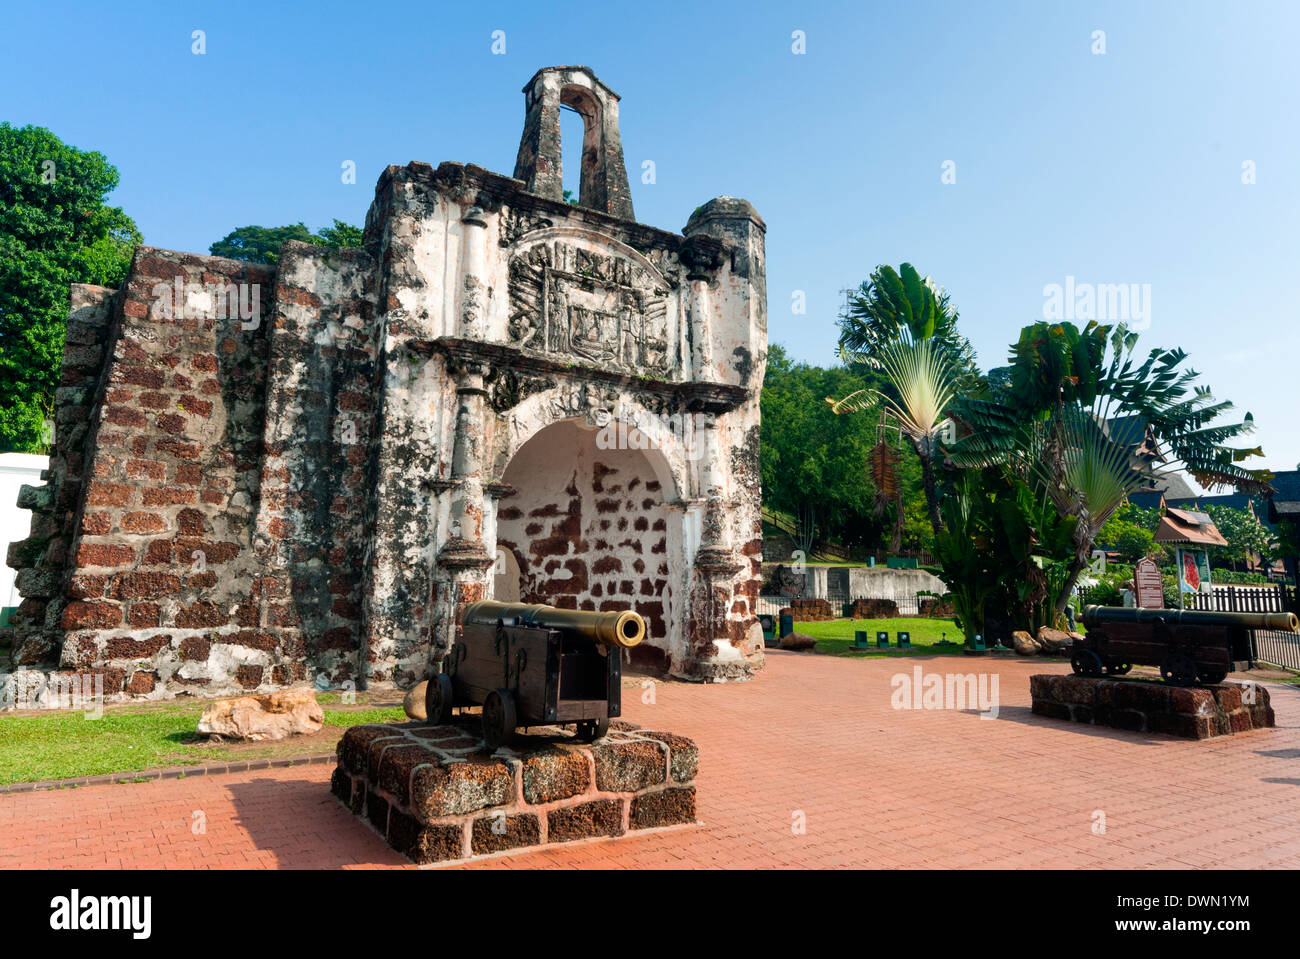 Porta de Santiago, Santiago Gerbang Pintu, Melaka (Malacca), site du patrimoine mondial de l'UNESCO, de l'État de Melaka, Malaisie, en Asie du sud-est Banque D'Images